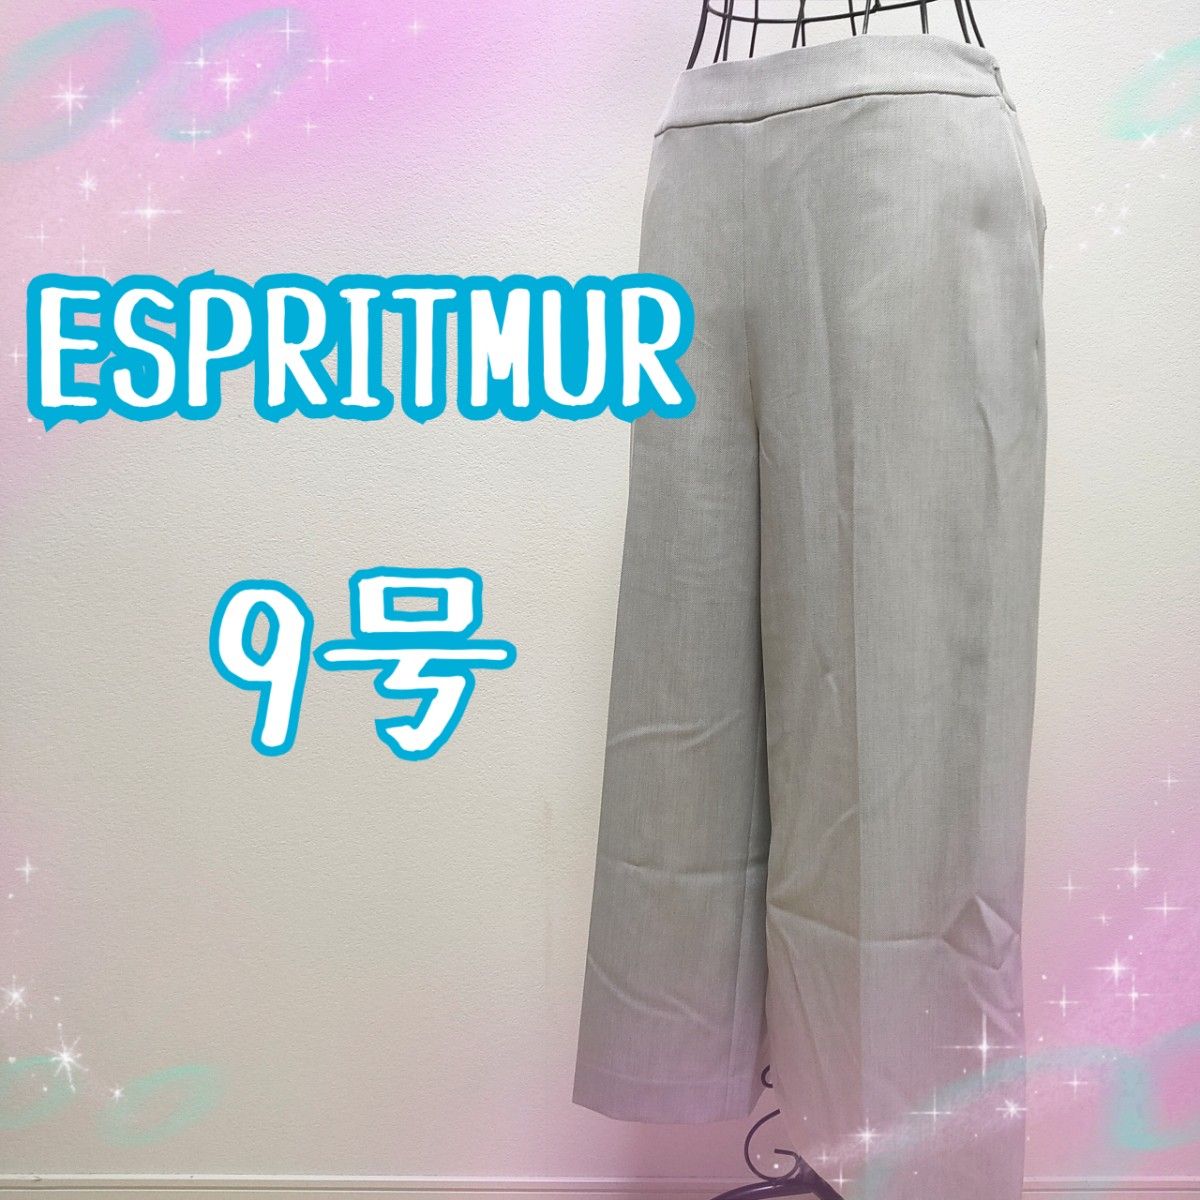 ESPRITMUR レディース パンツ 9号 M カジュアル 綺麗系 ワイドパンツ